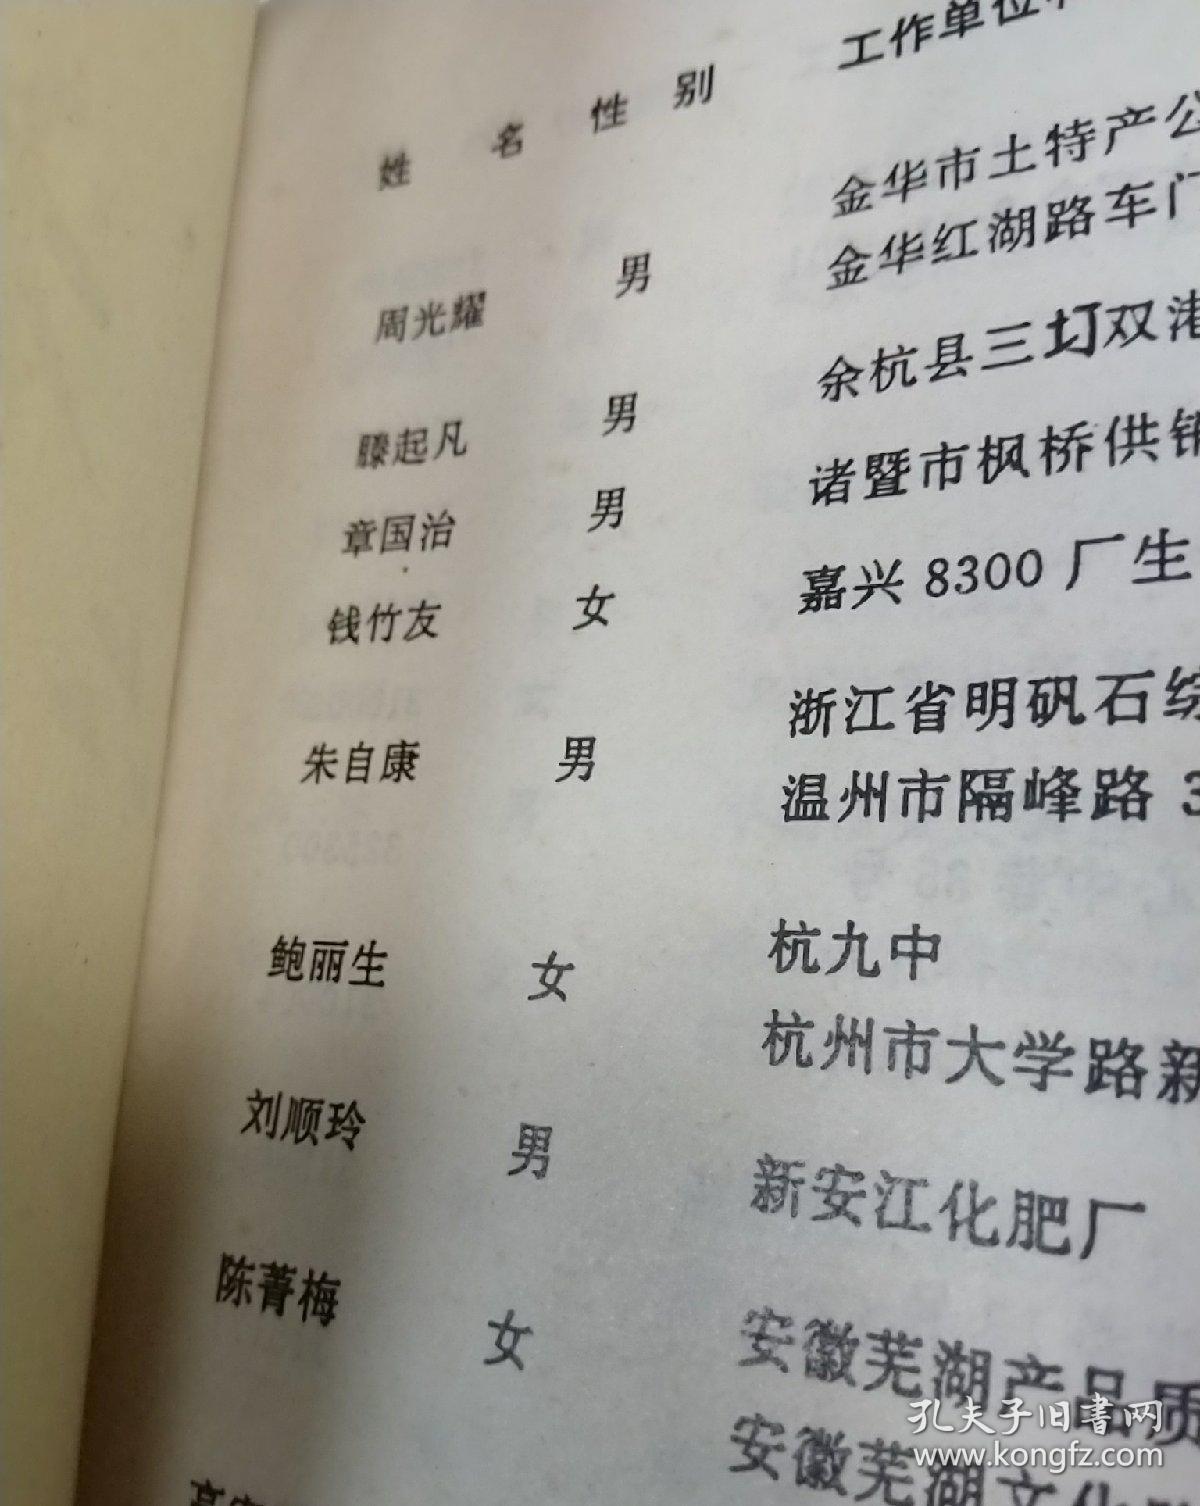 杭州大学 杭大化学系六二届同学录毕业三十周年纪念 徐兆华题 1992年九月 杭大同学通讯有很多姓名